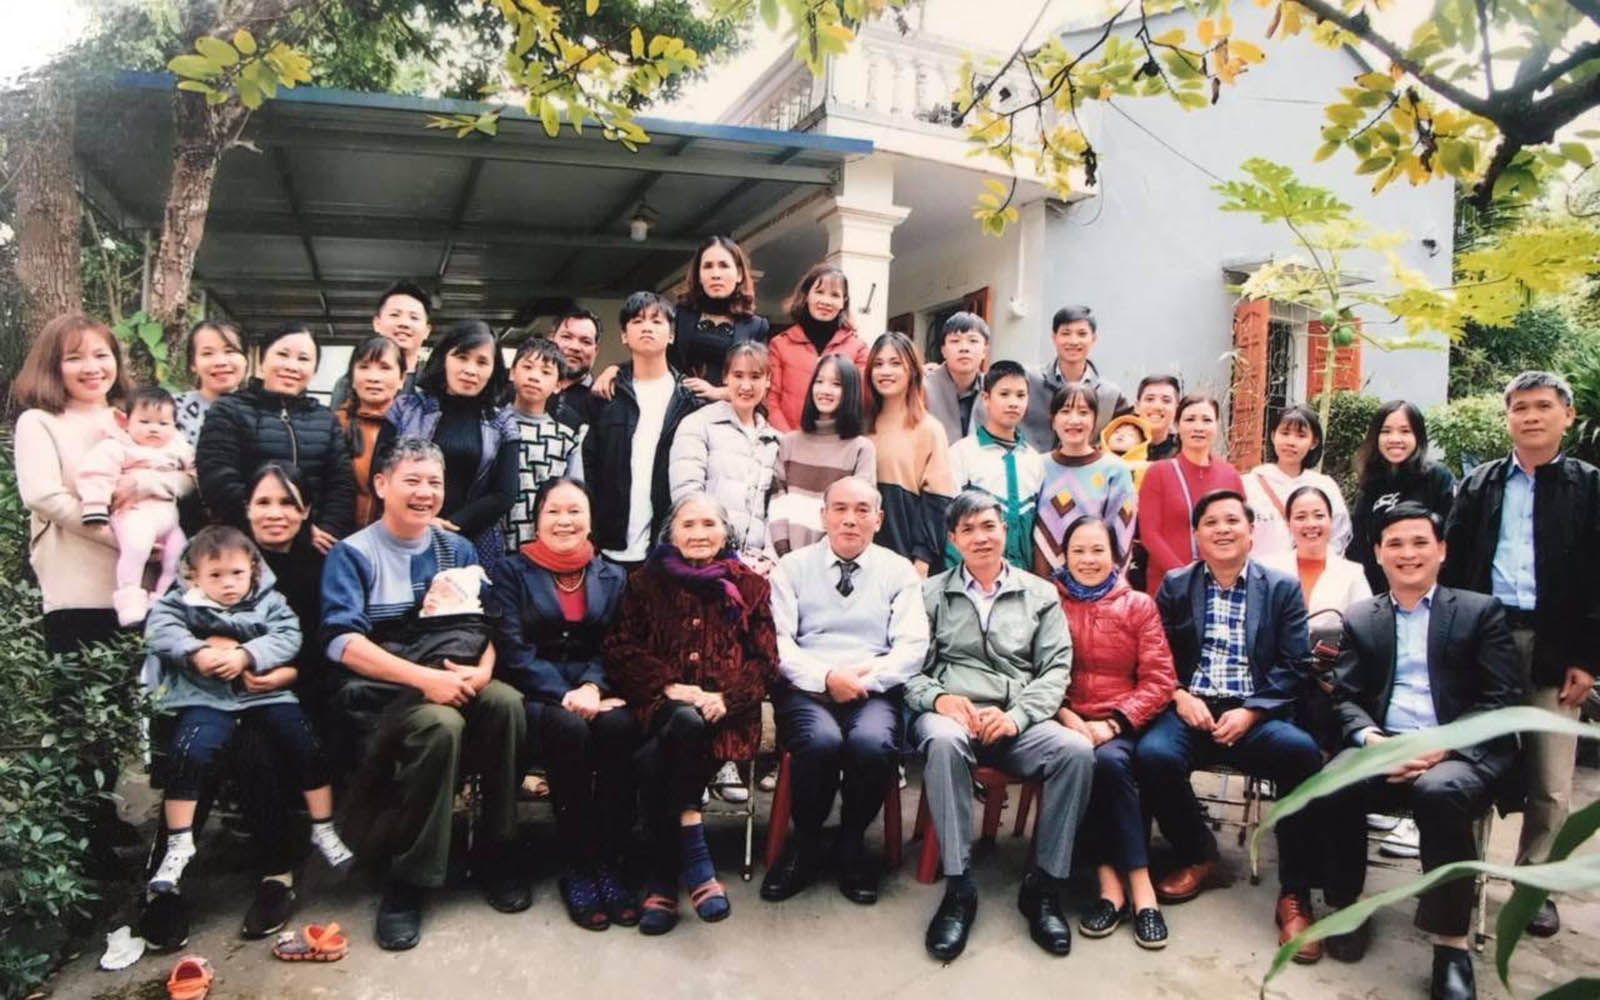 Đại gia đình nhà tôi chụp ảnh lưu niệm tại ngôi nhà của bố mẹ tôi ở khu Vó Ngựa, thuộc phường Tân Thành, TP. Thái Nguyên (tôi đứng cao nhất ở giữa, hàng sau cùng)